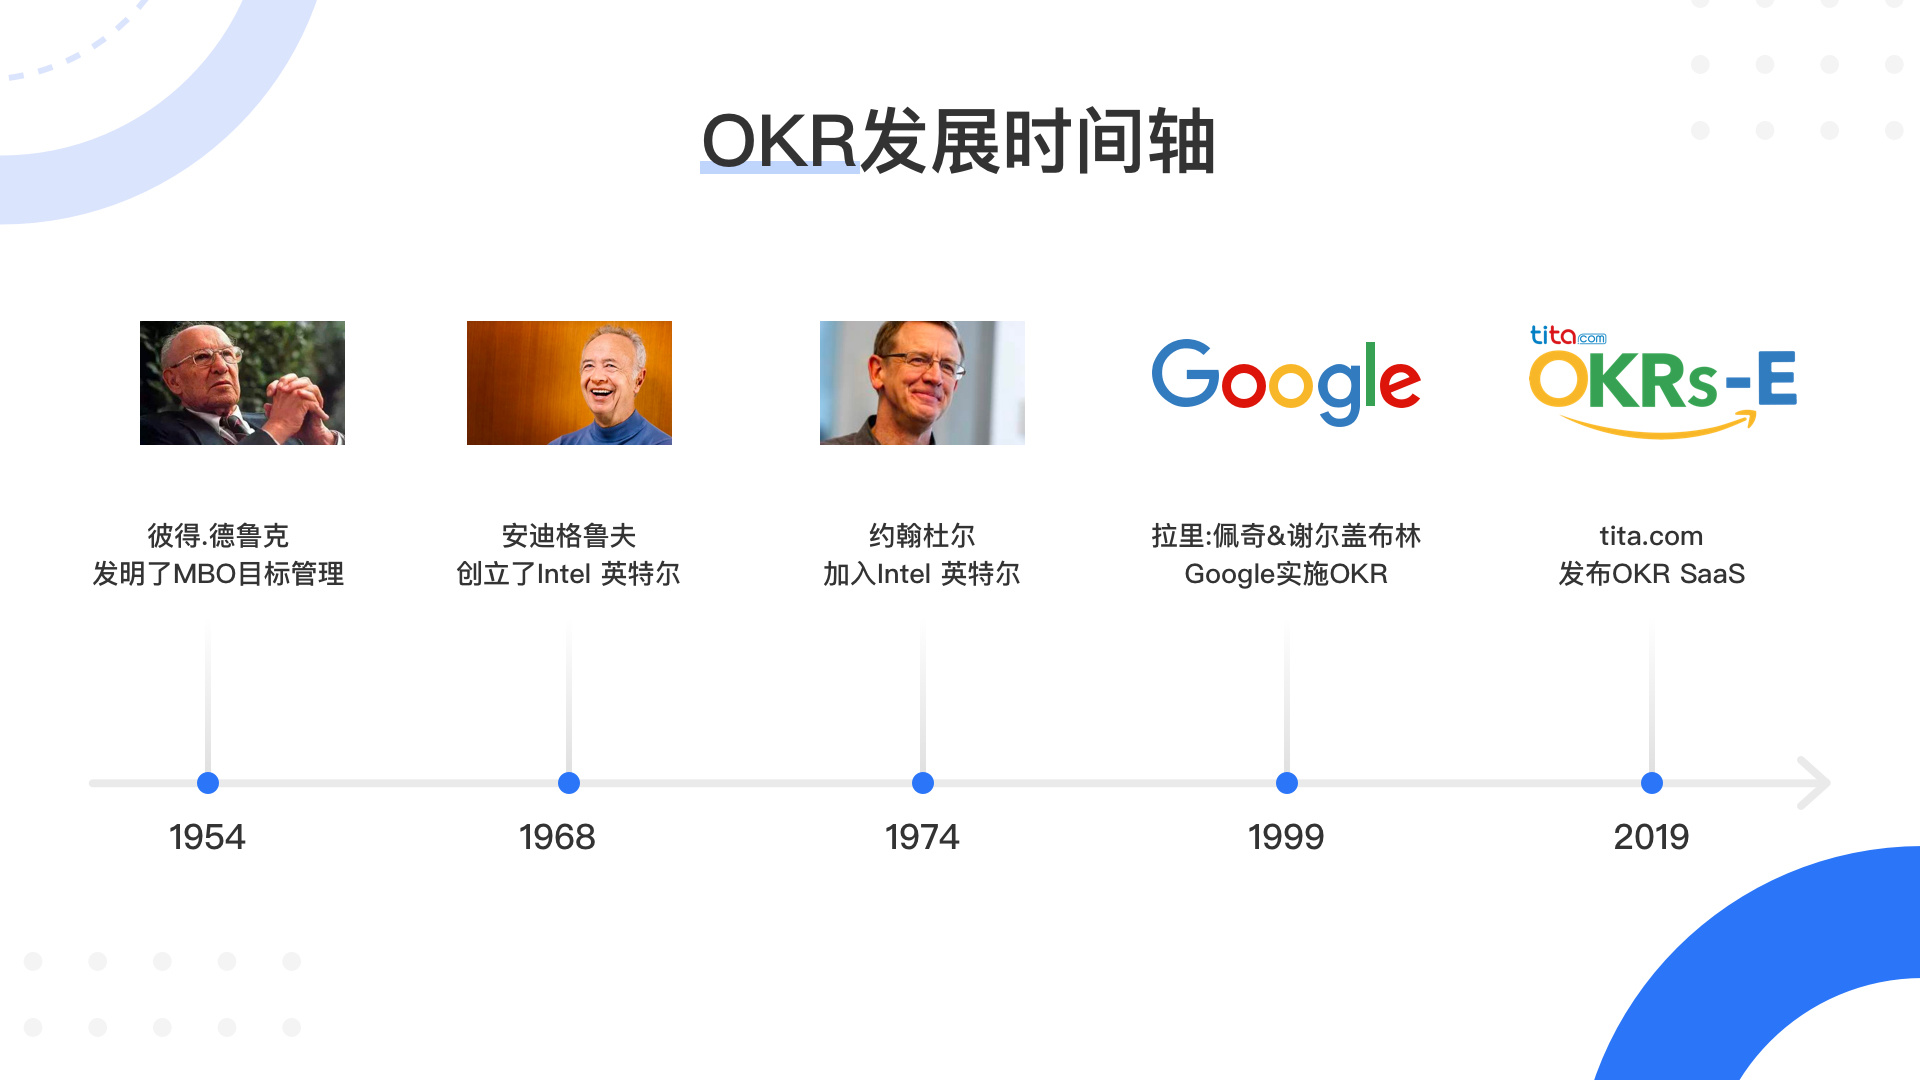 风靡互联网大厂的目标管理法，除了OKR还有SMART